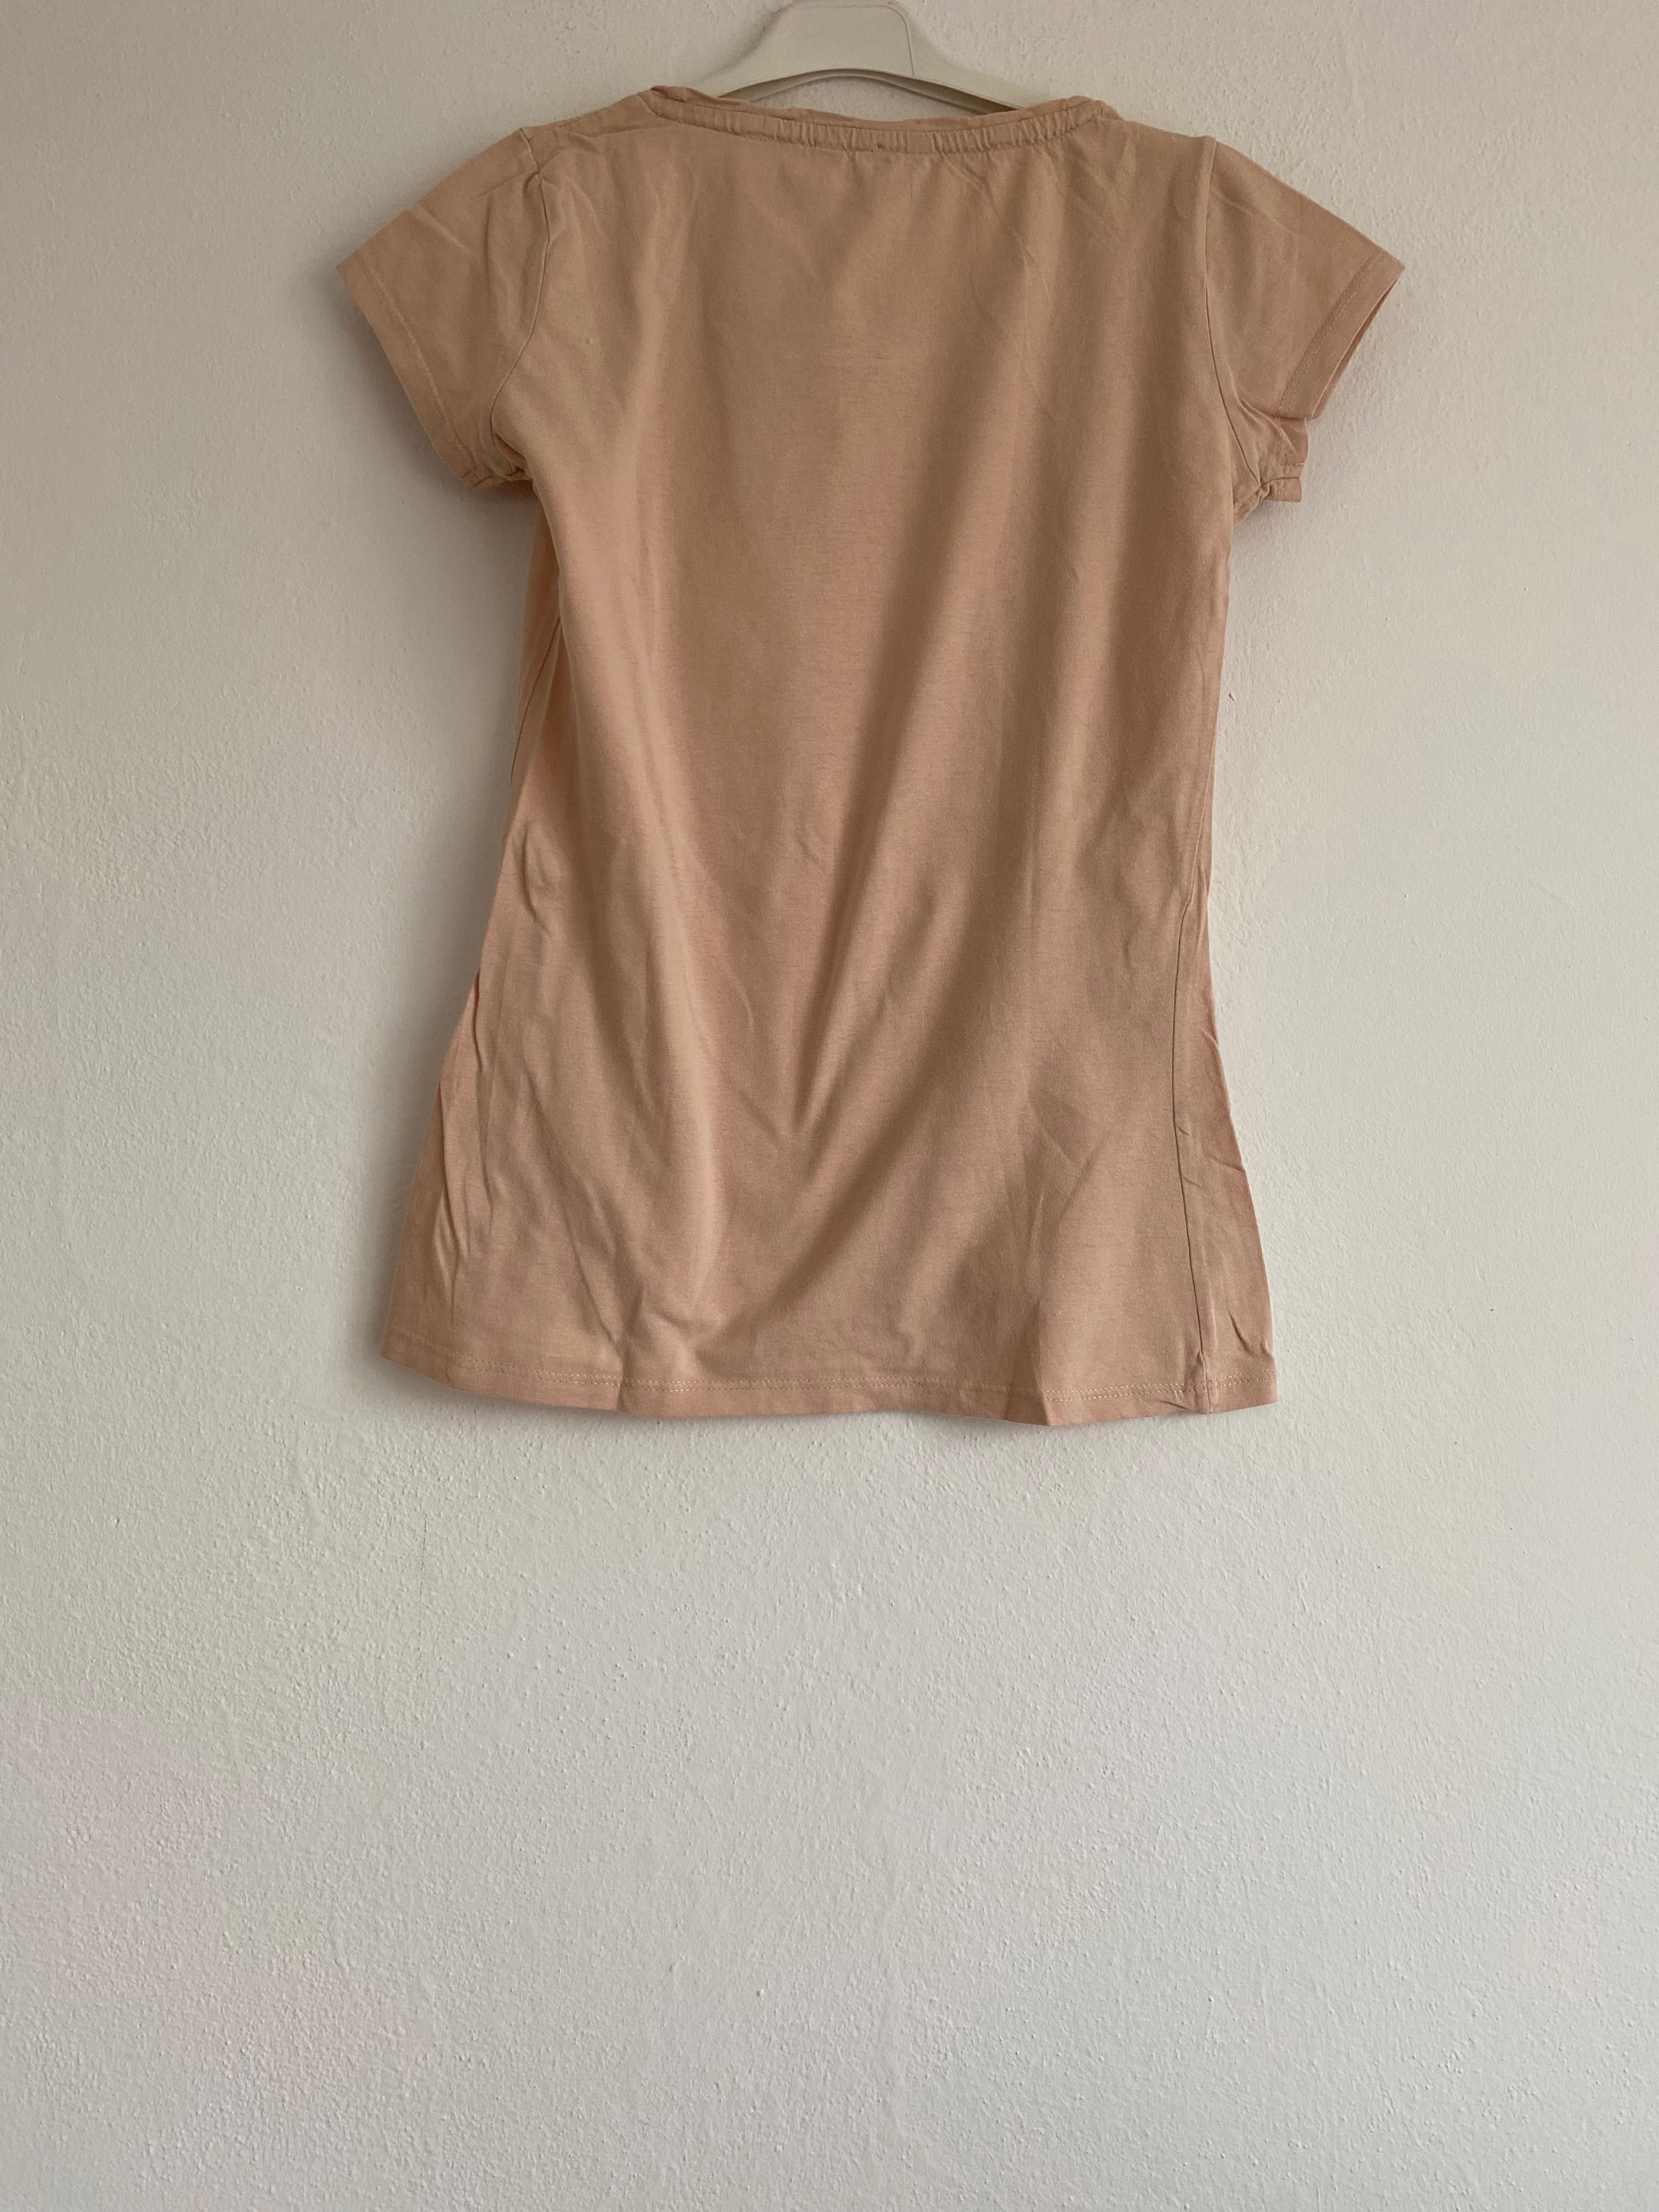 Podkoszulek/t-shirt/koszulka z krótkim rękawem